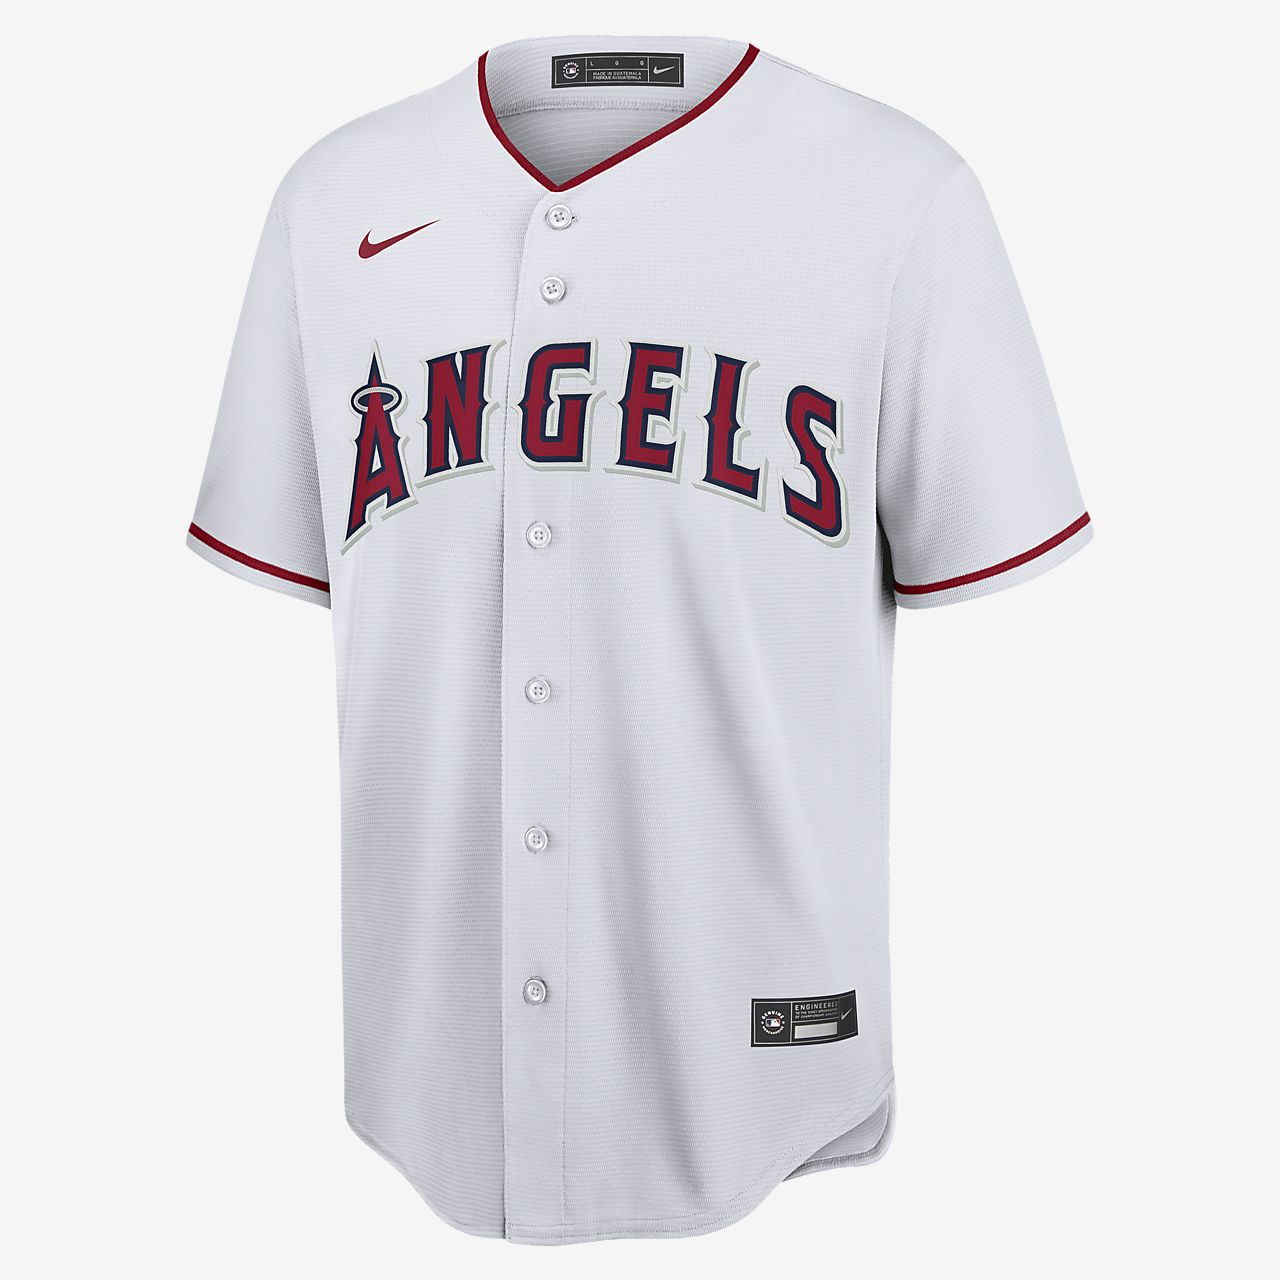 angels jersey cheap